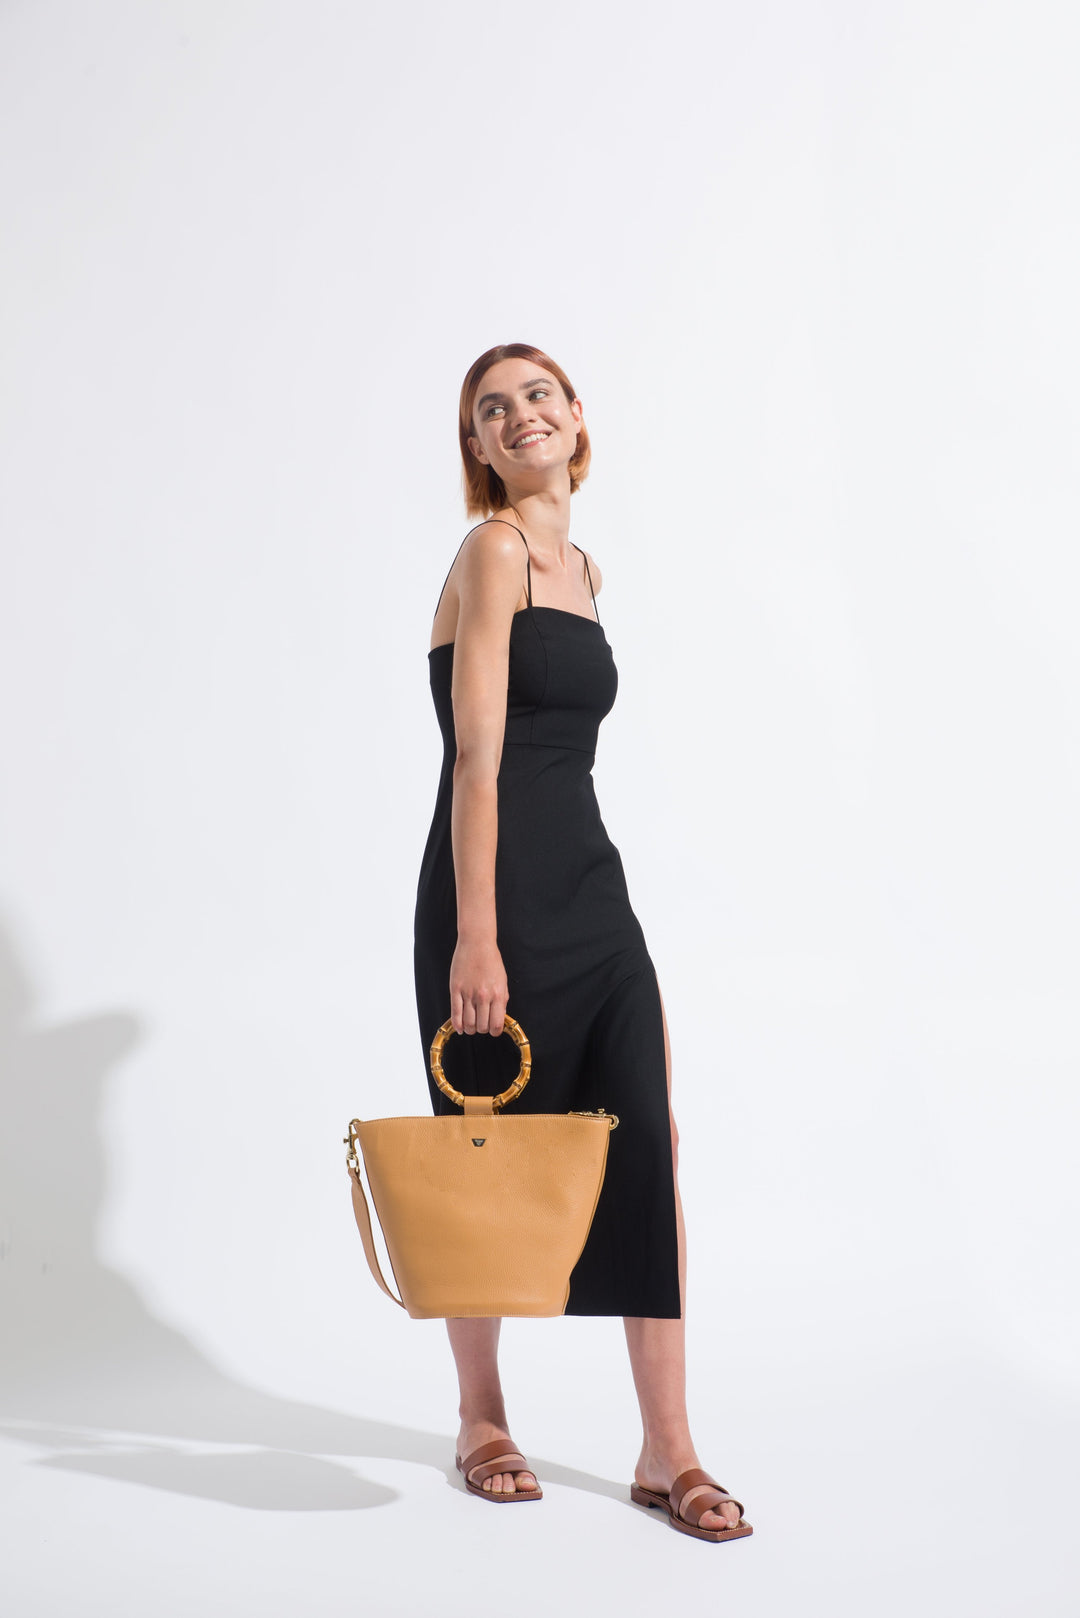 Woman in black sleeveless dress holding tan handbag against white background